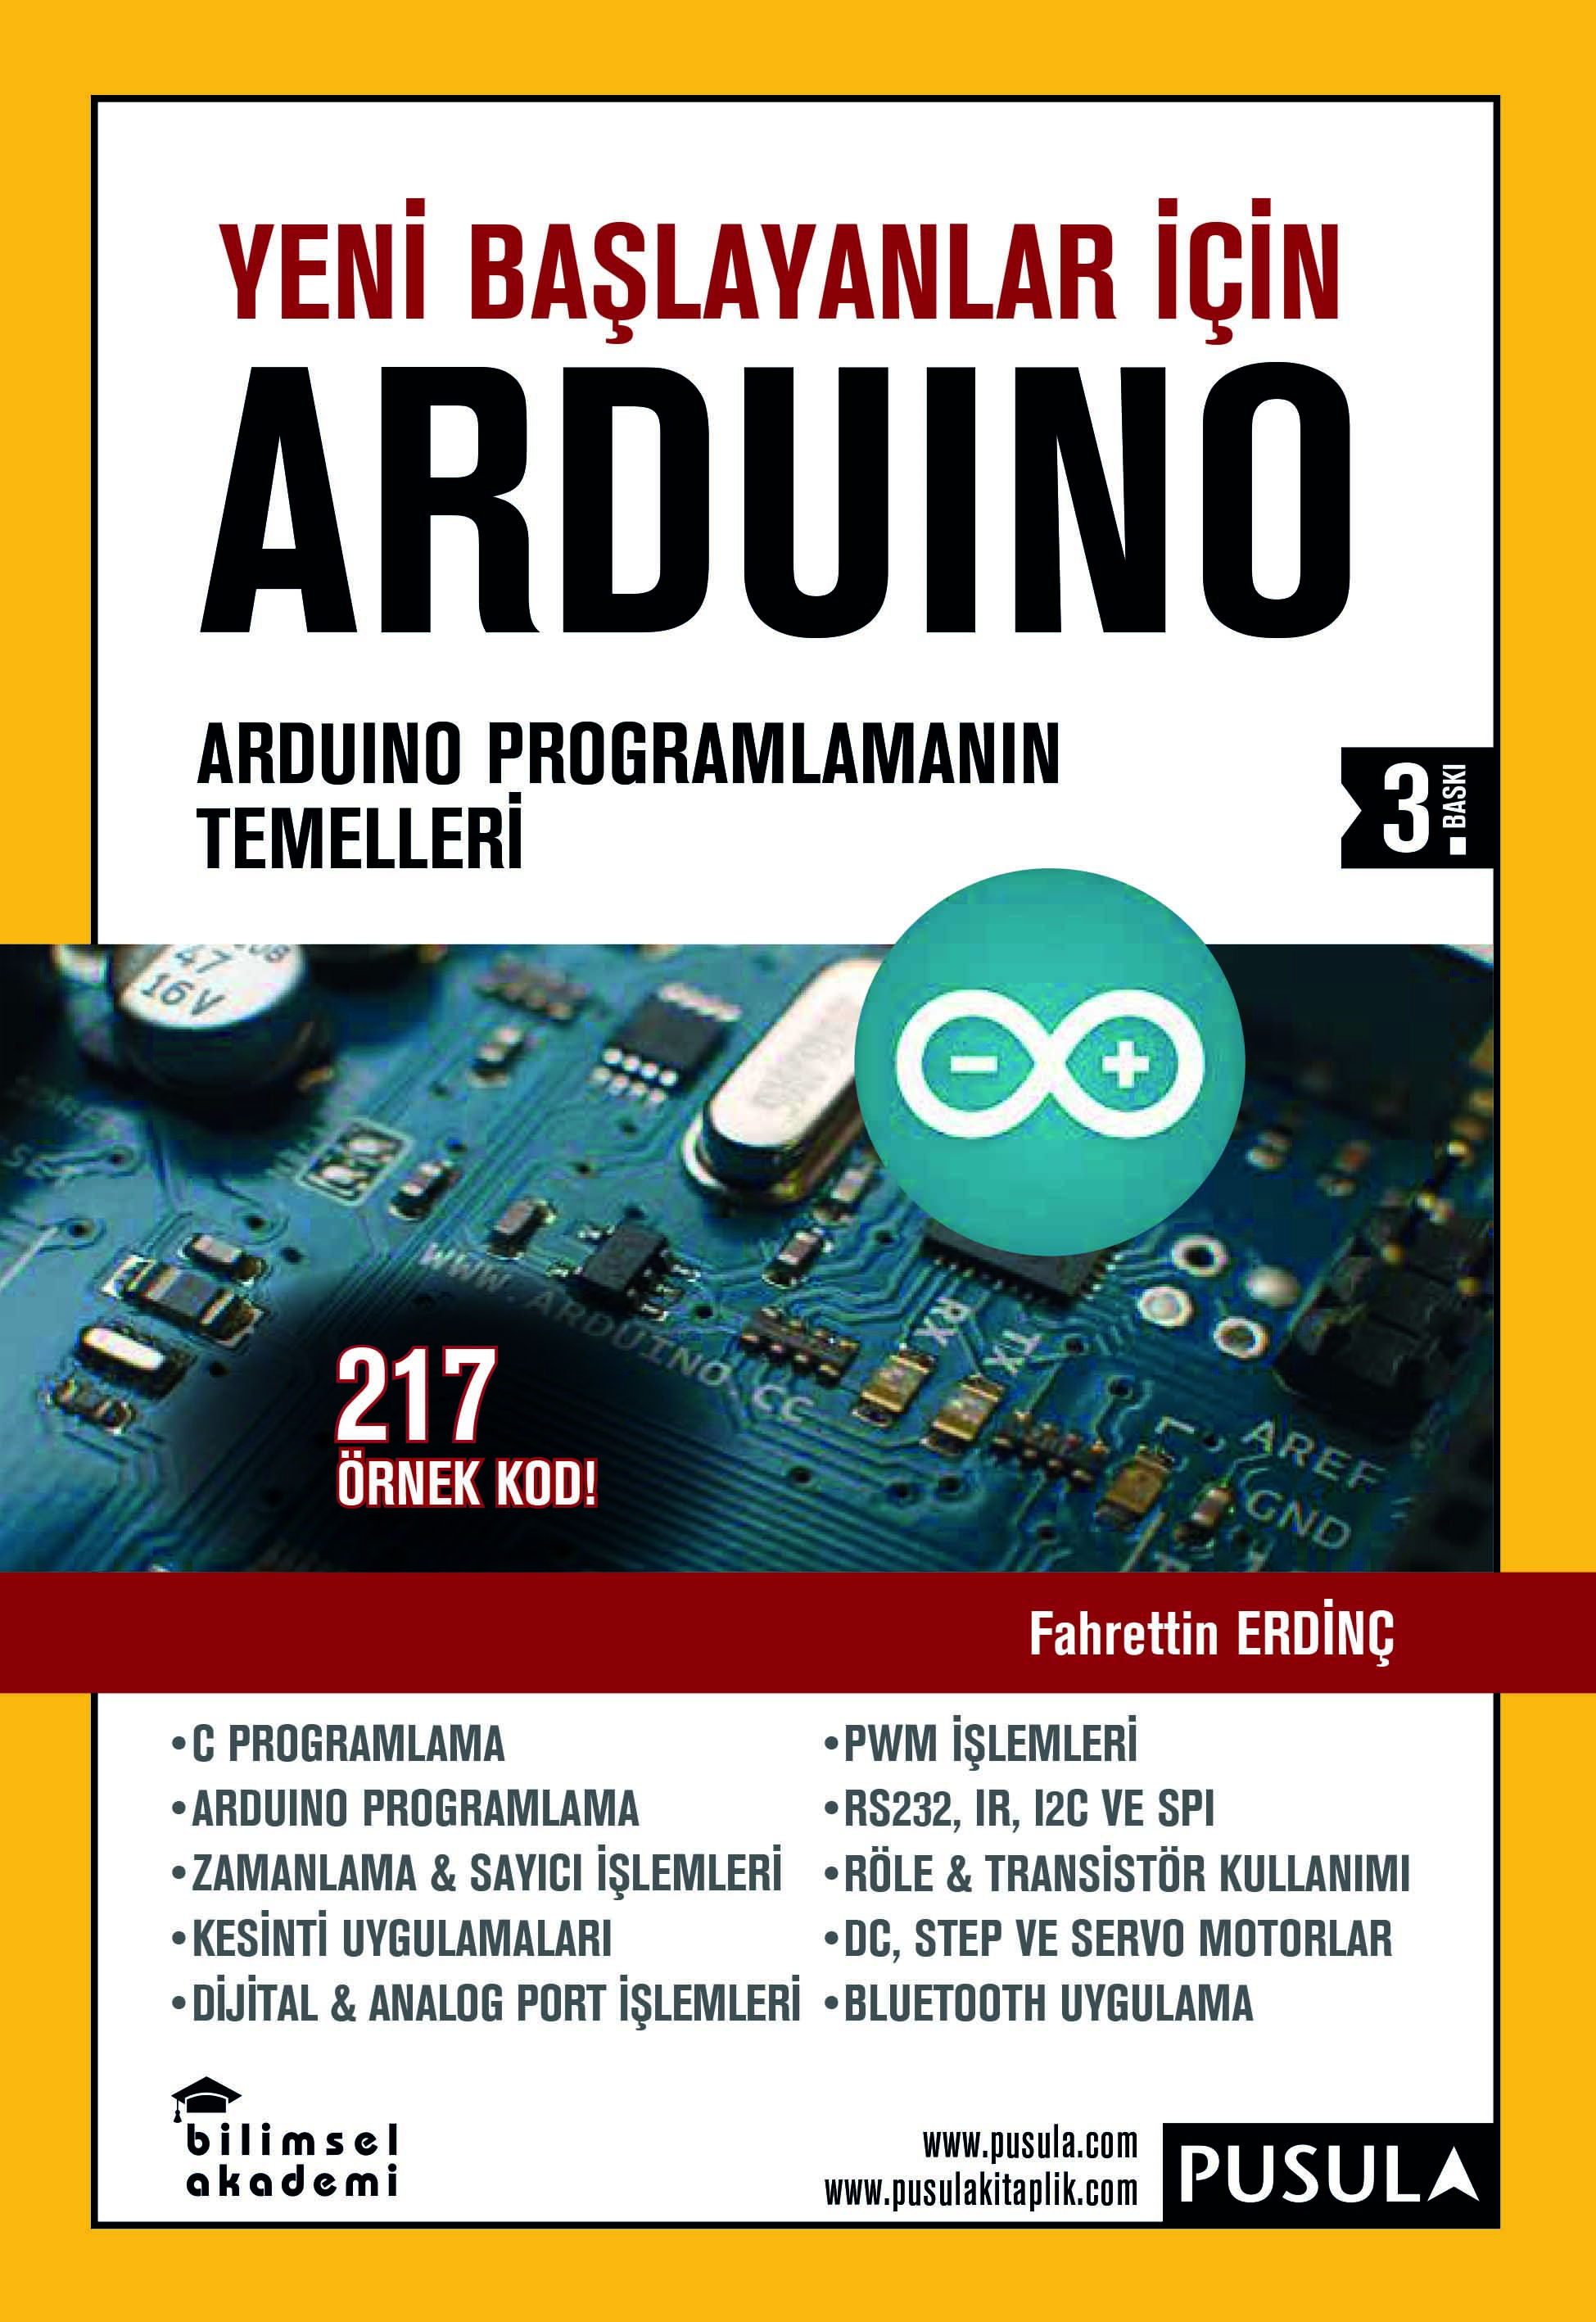 Yeni Başlayanlar İçin Arduino